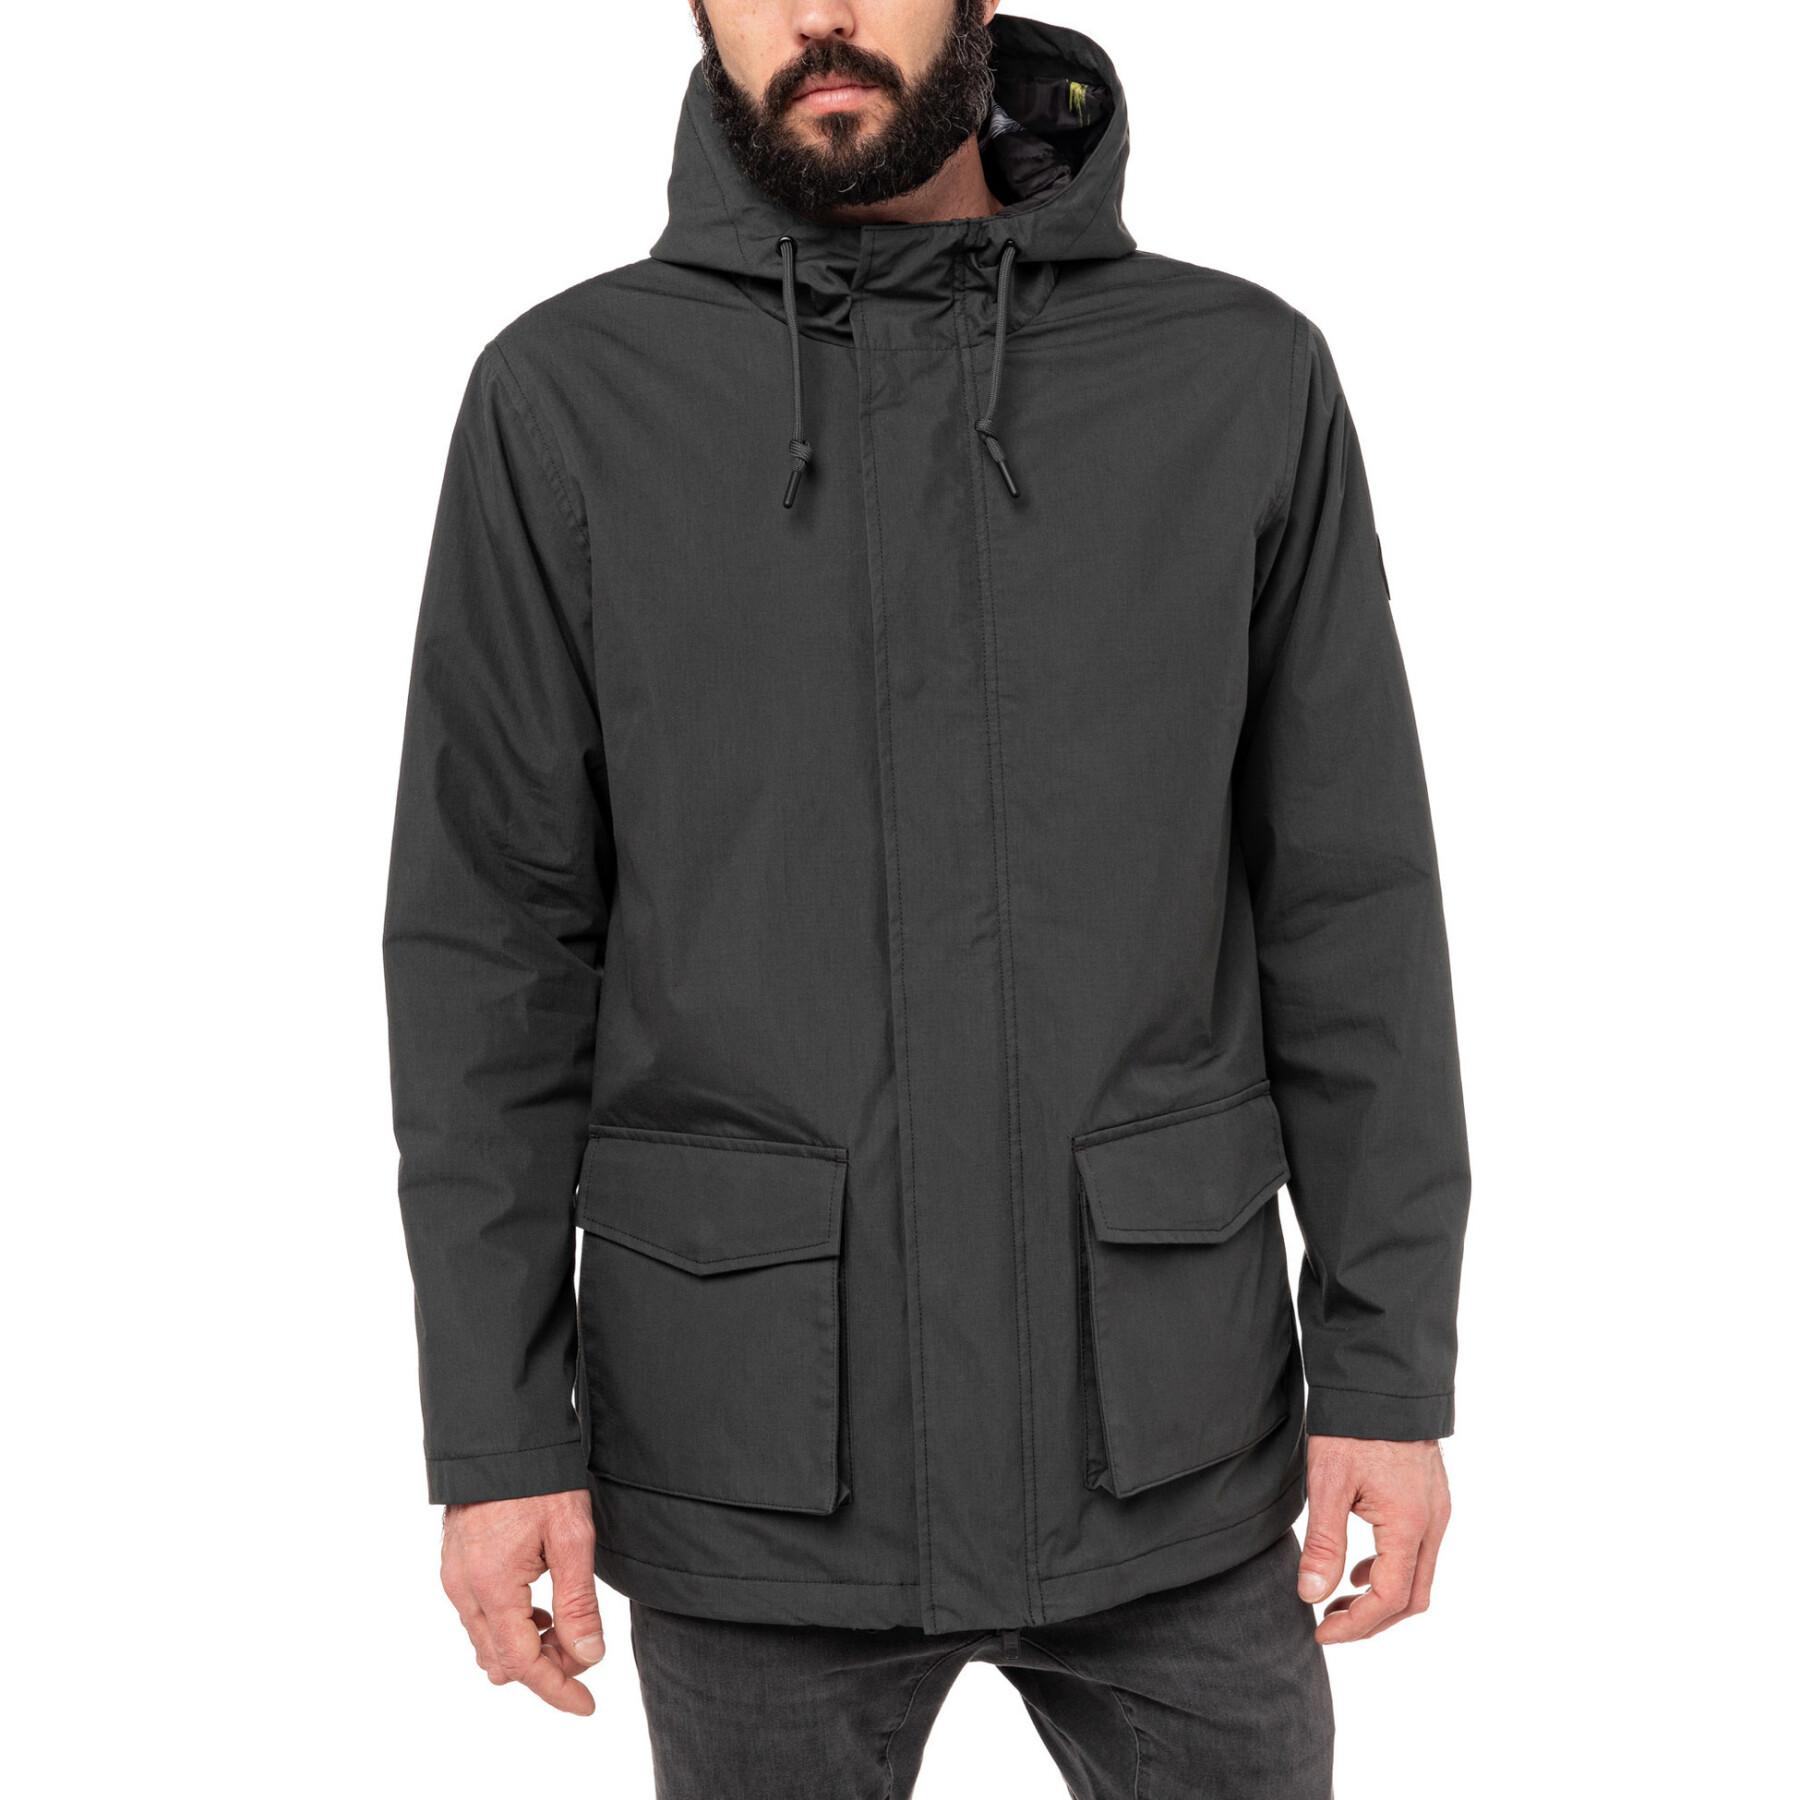 Waterproof jacket Pull-in darktropic